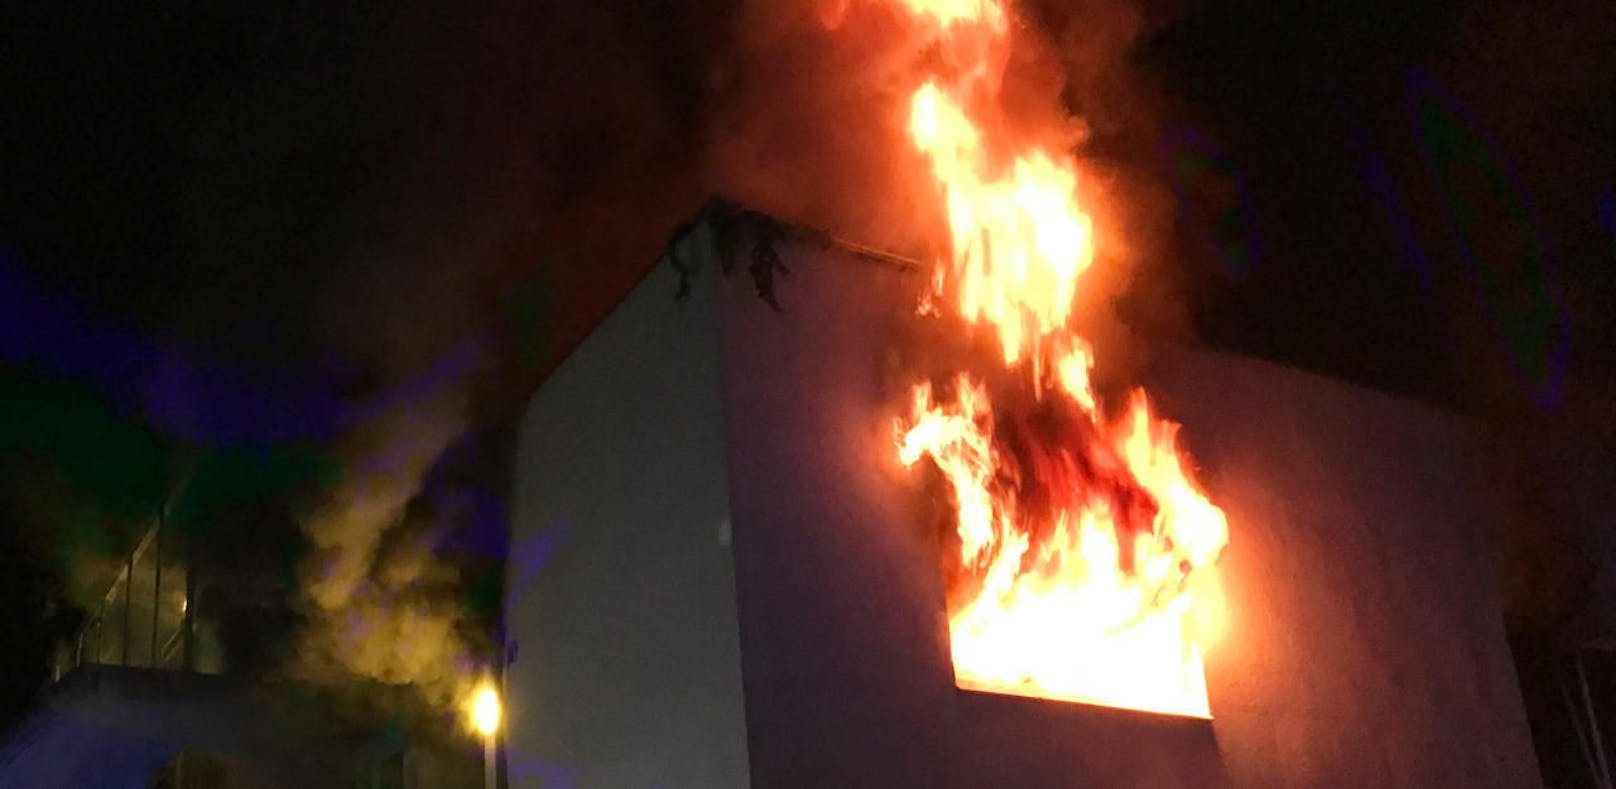 Wohnungsbrand durch brennende Kerze ausgelöst